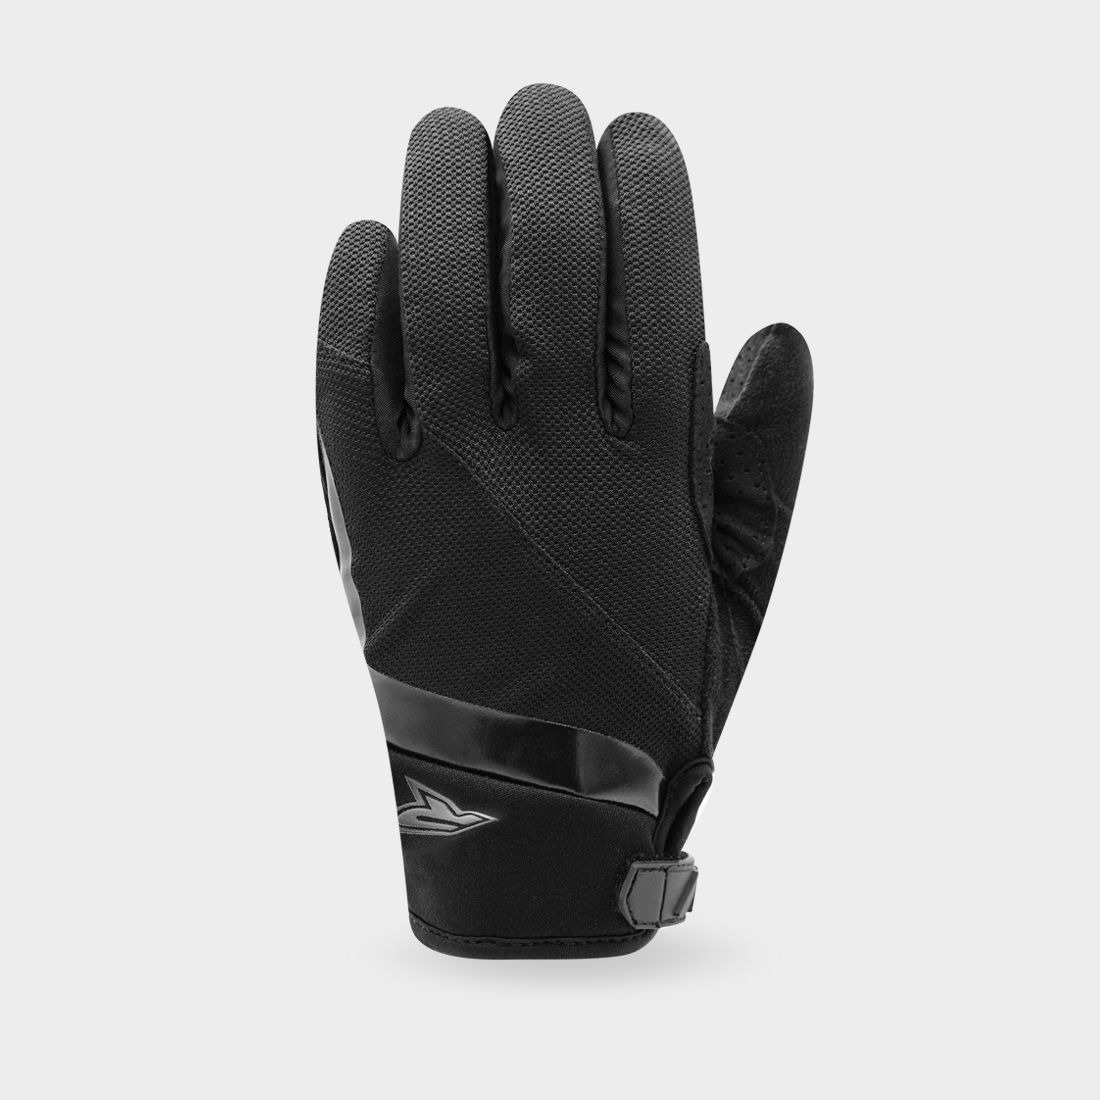 gloves GP STYLE, RACER (black)